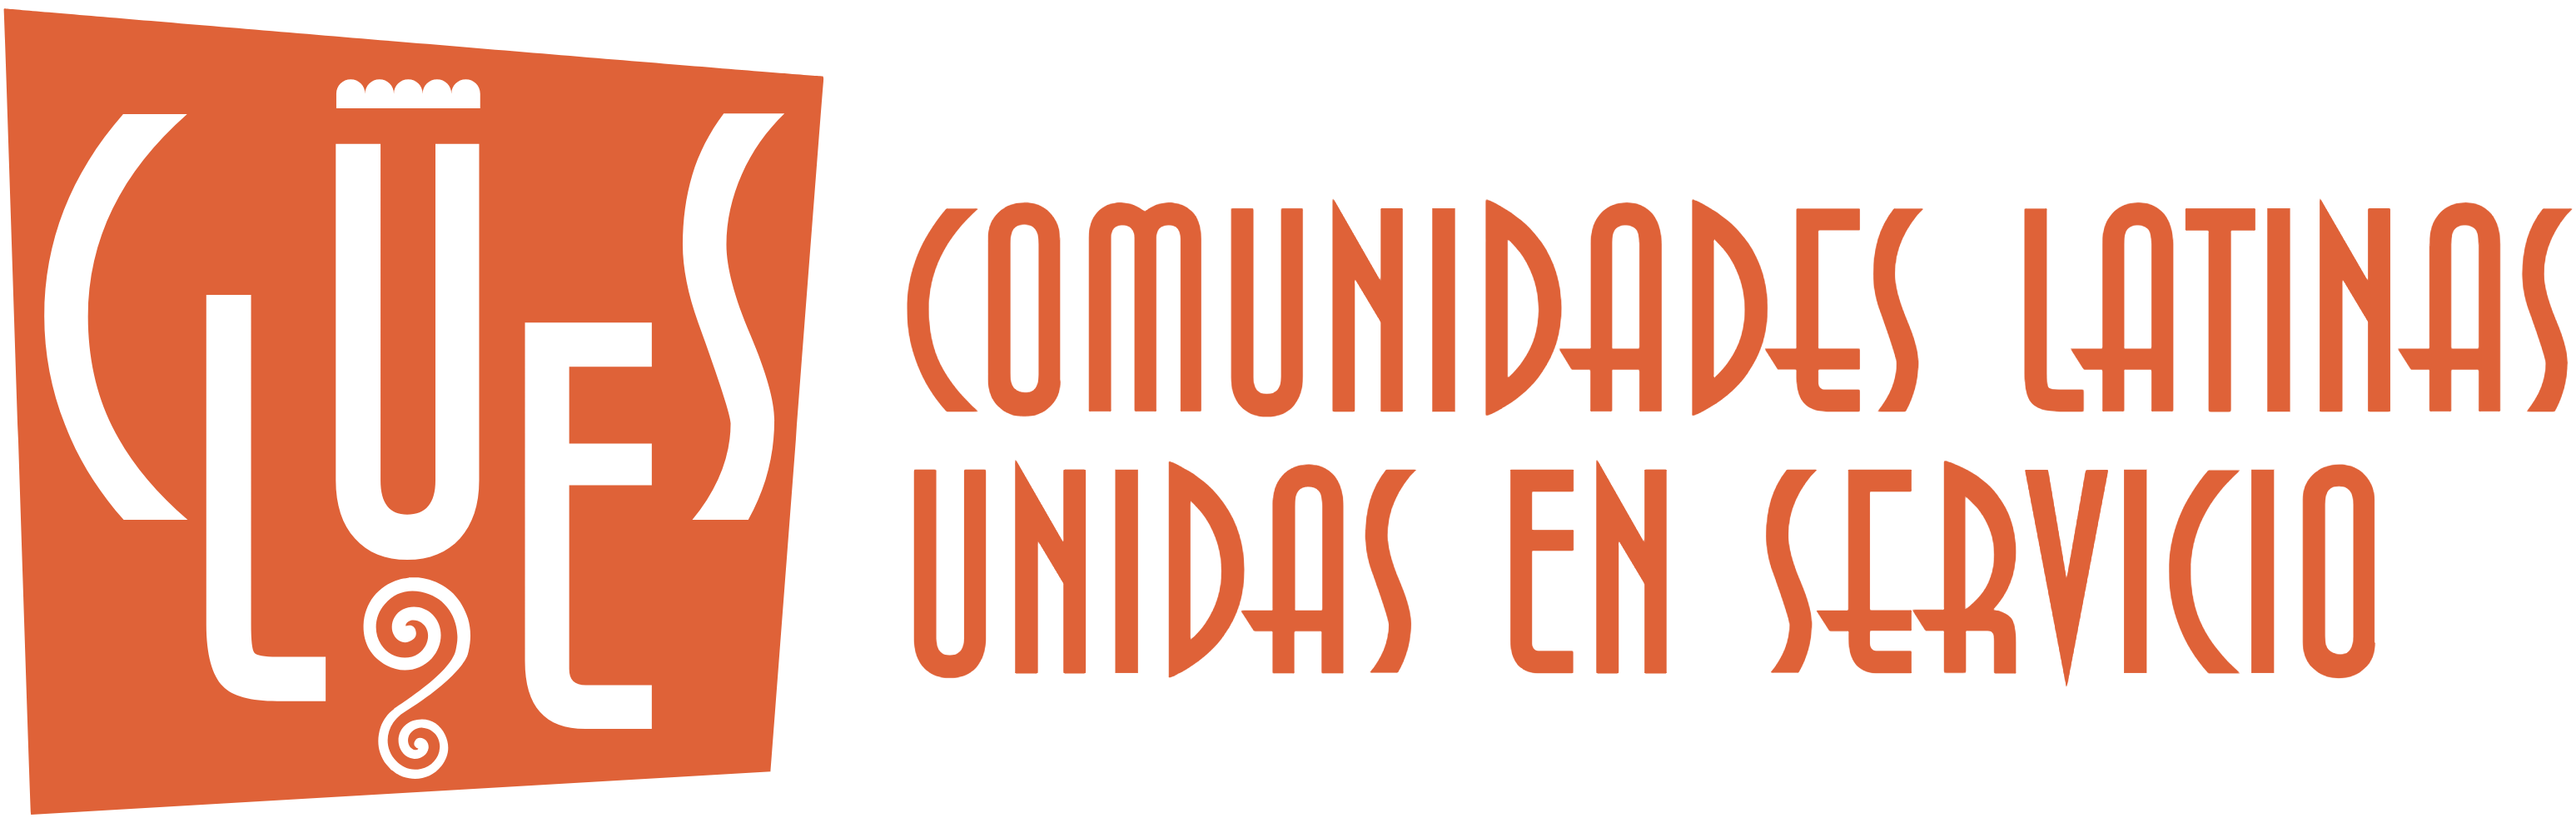 CLUES Comunidades Latinas Unidas En Servico